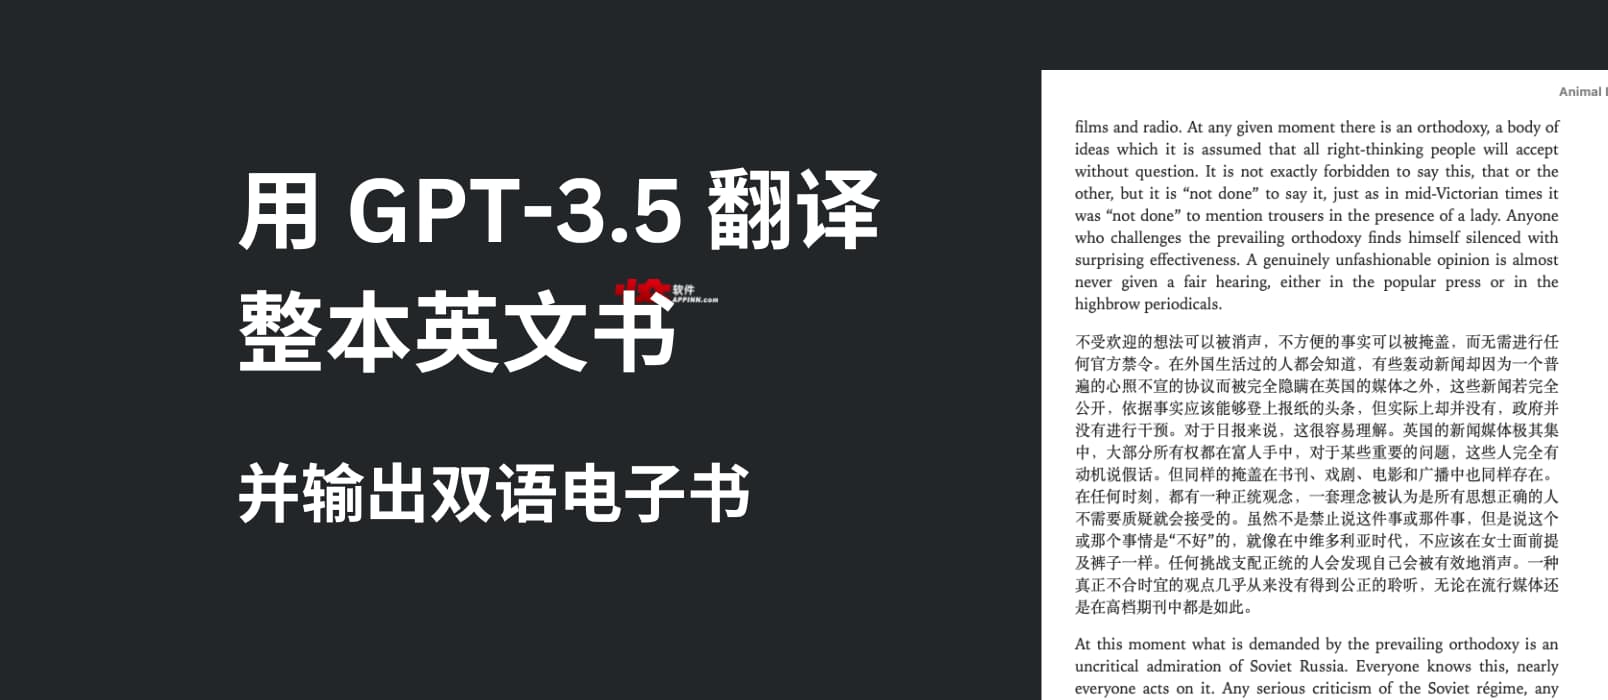 用 GPT-3.5 翻译整本英文书，输出中英双语电子书 1